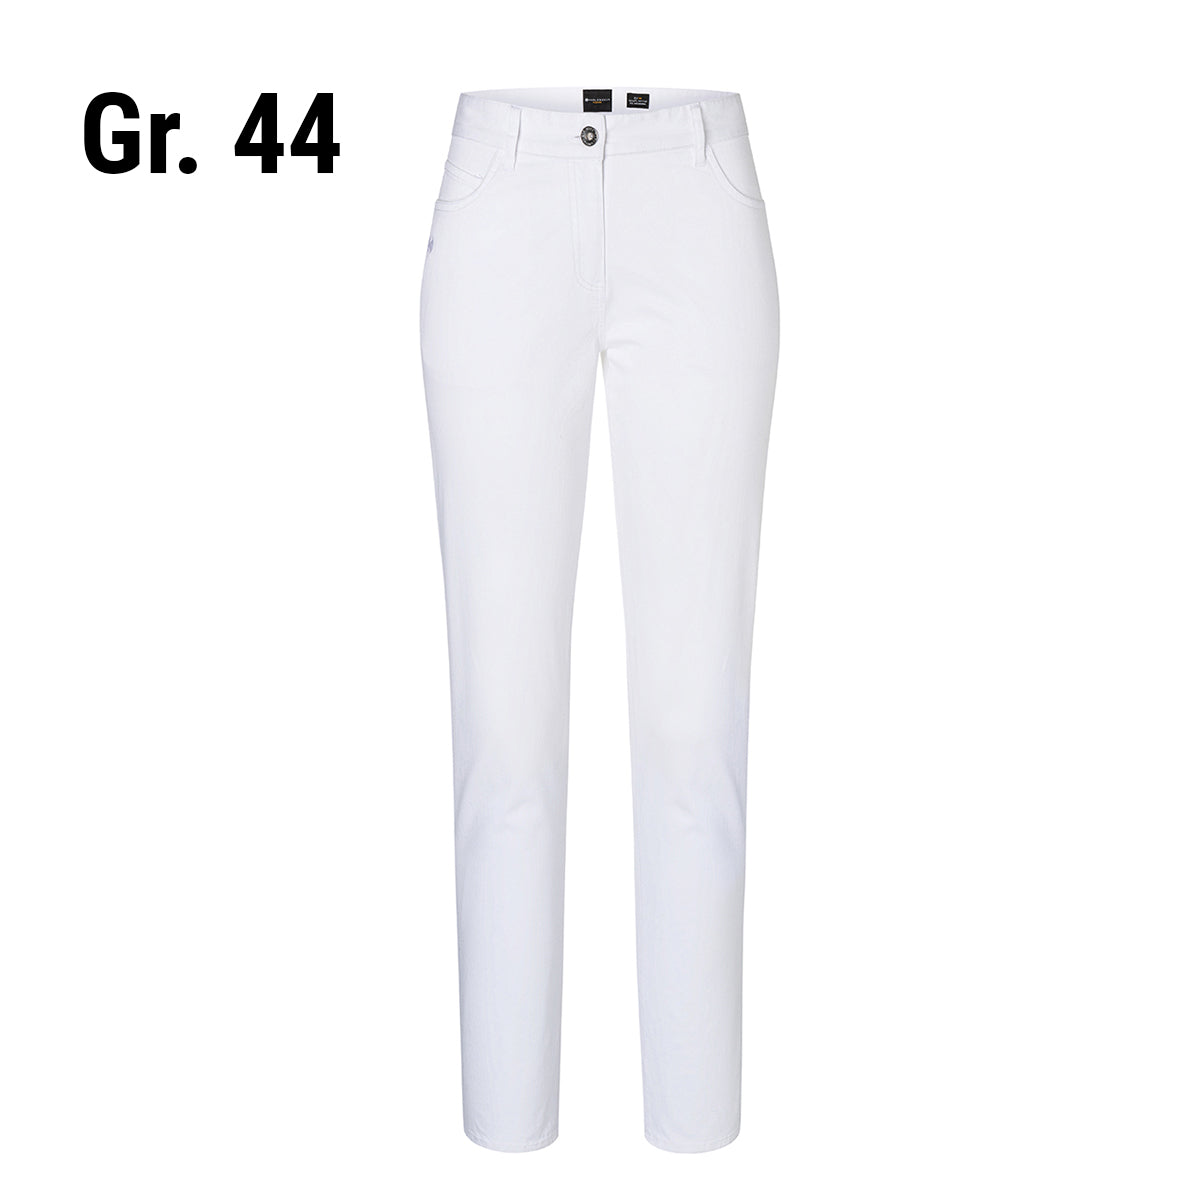 (6 stk.) Karlowsky - bukser med 5 lommer til damer - hvid - størrelse: 44